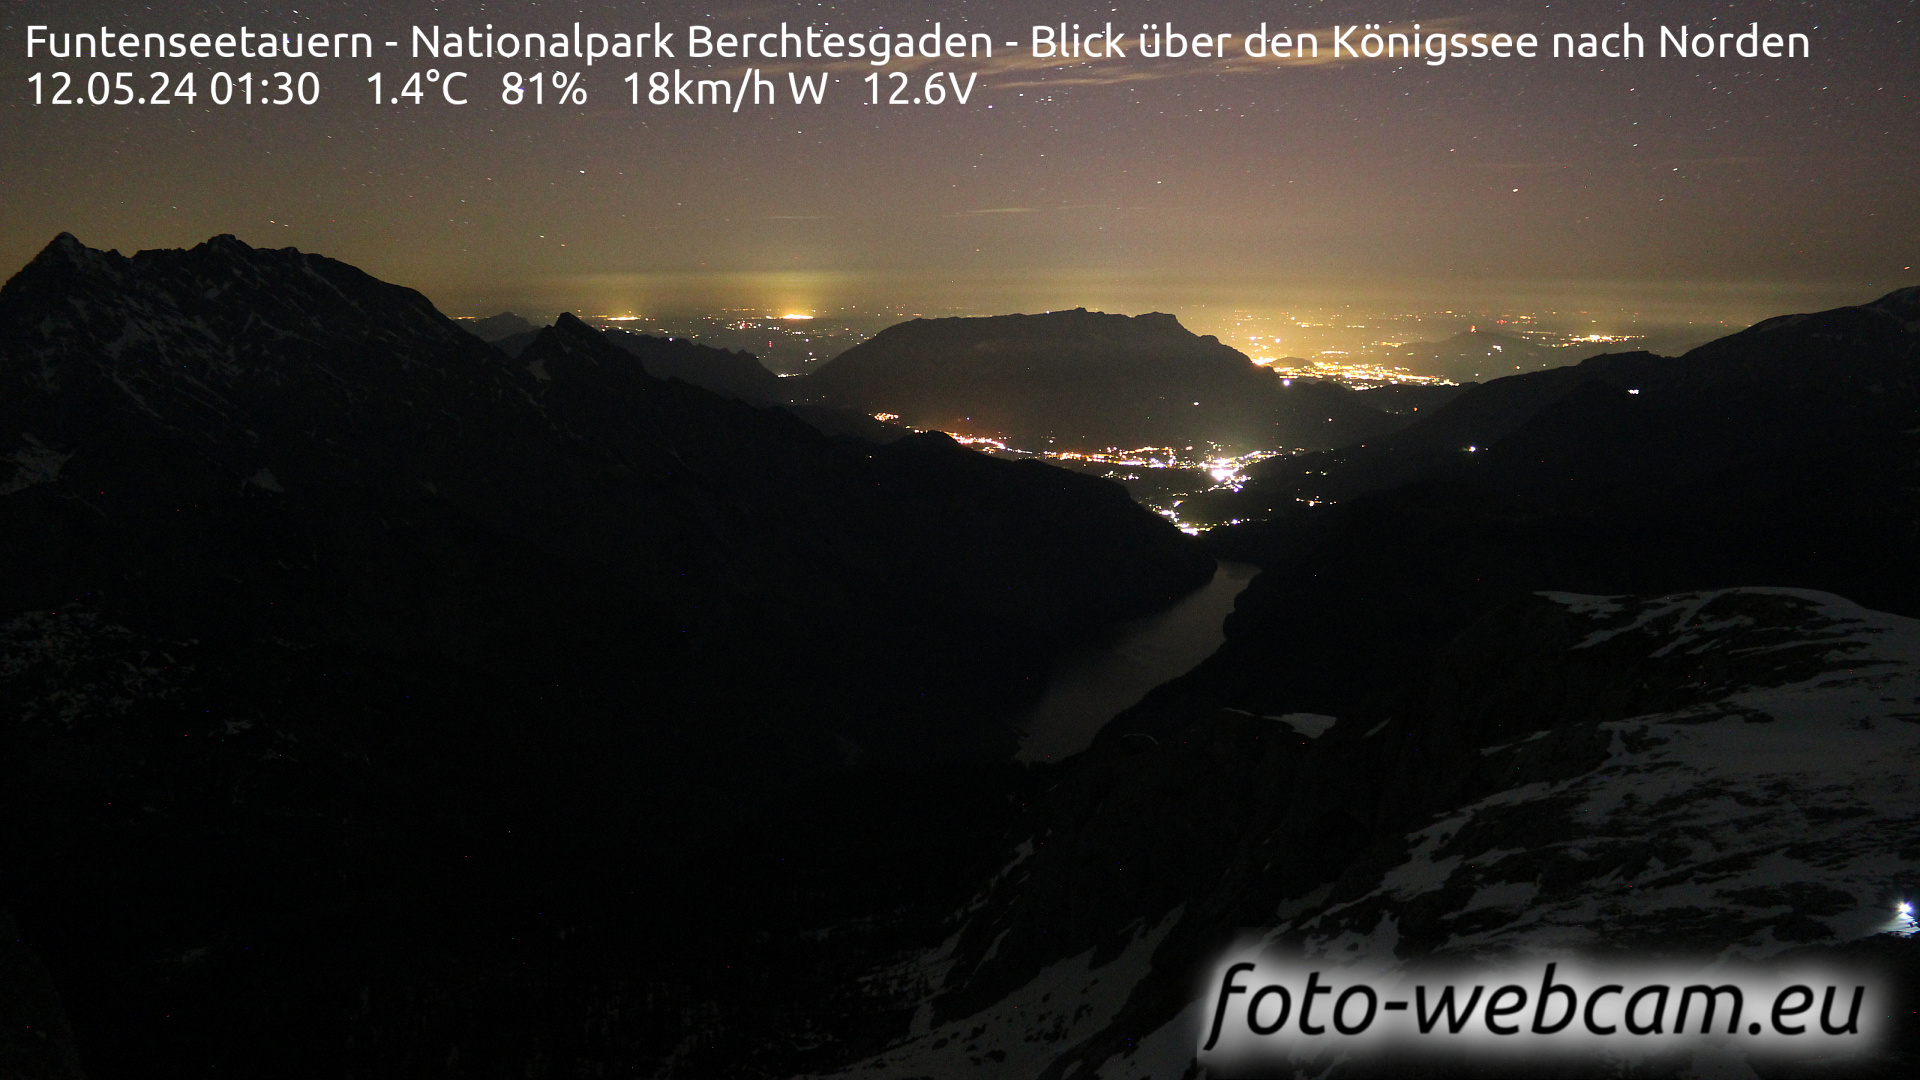 Berchtesgaden Gio. 01:48